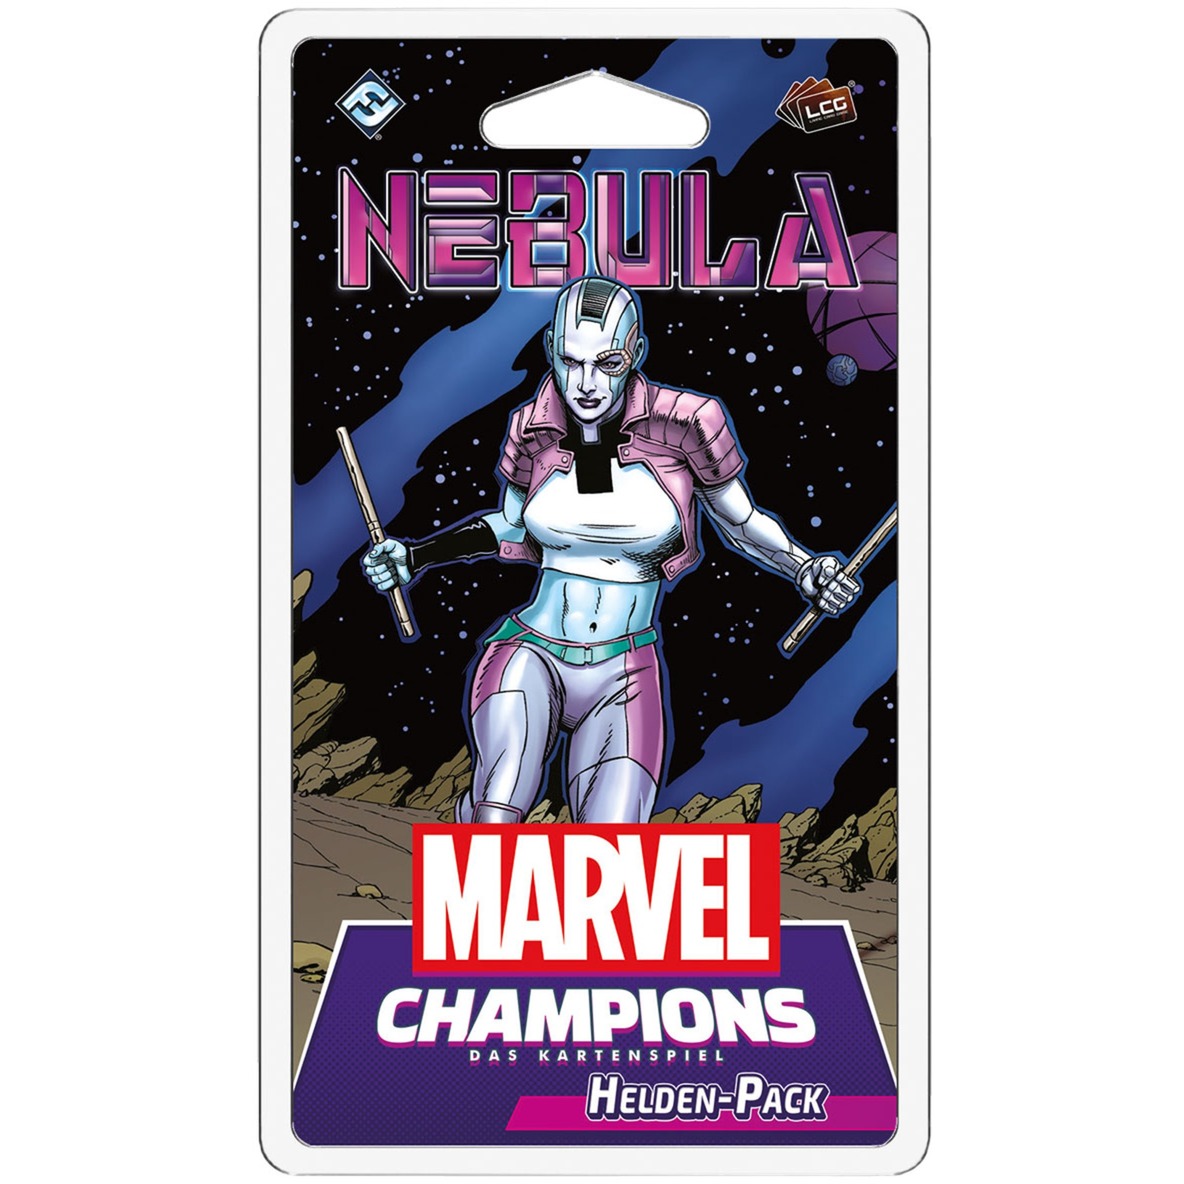 Marvel Champions: Das Kartenspiel - Nebula von Asmodee